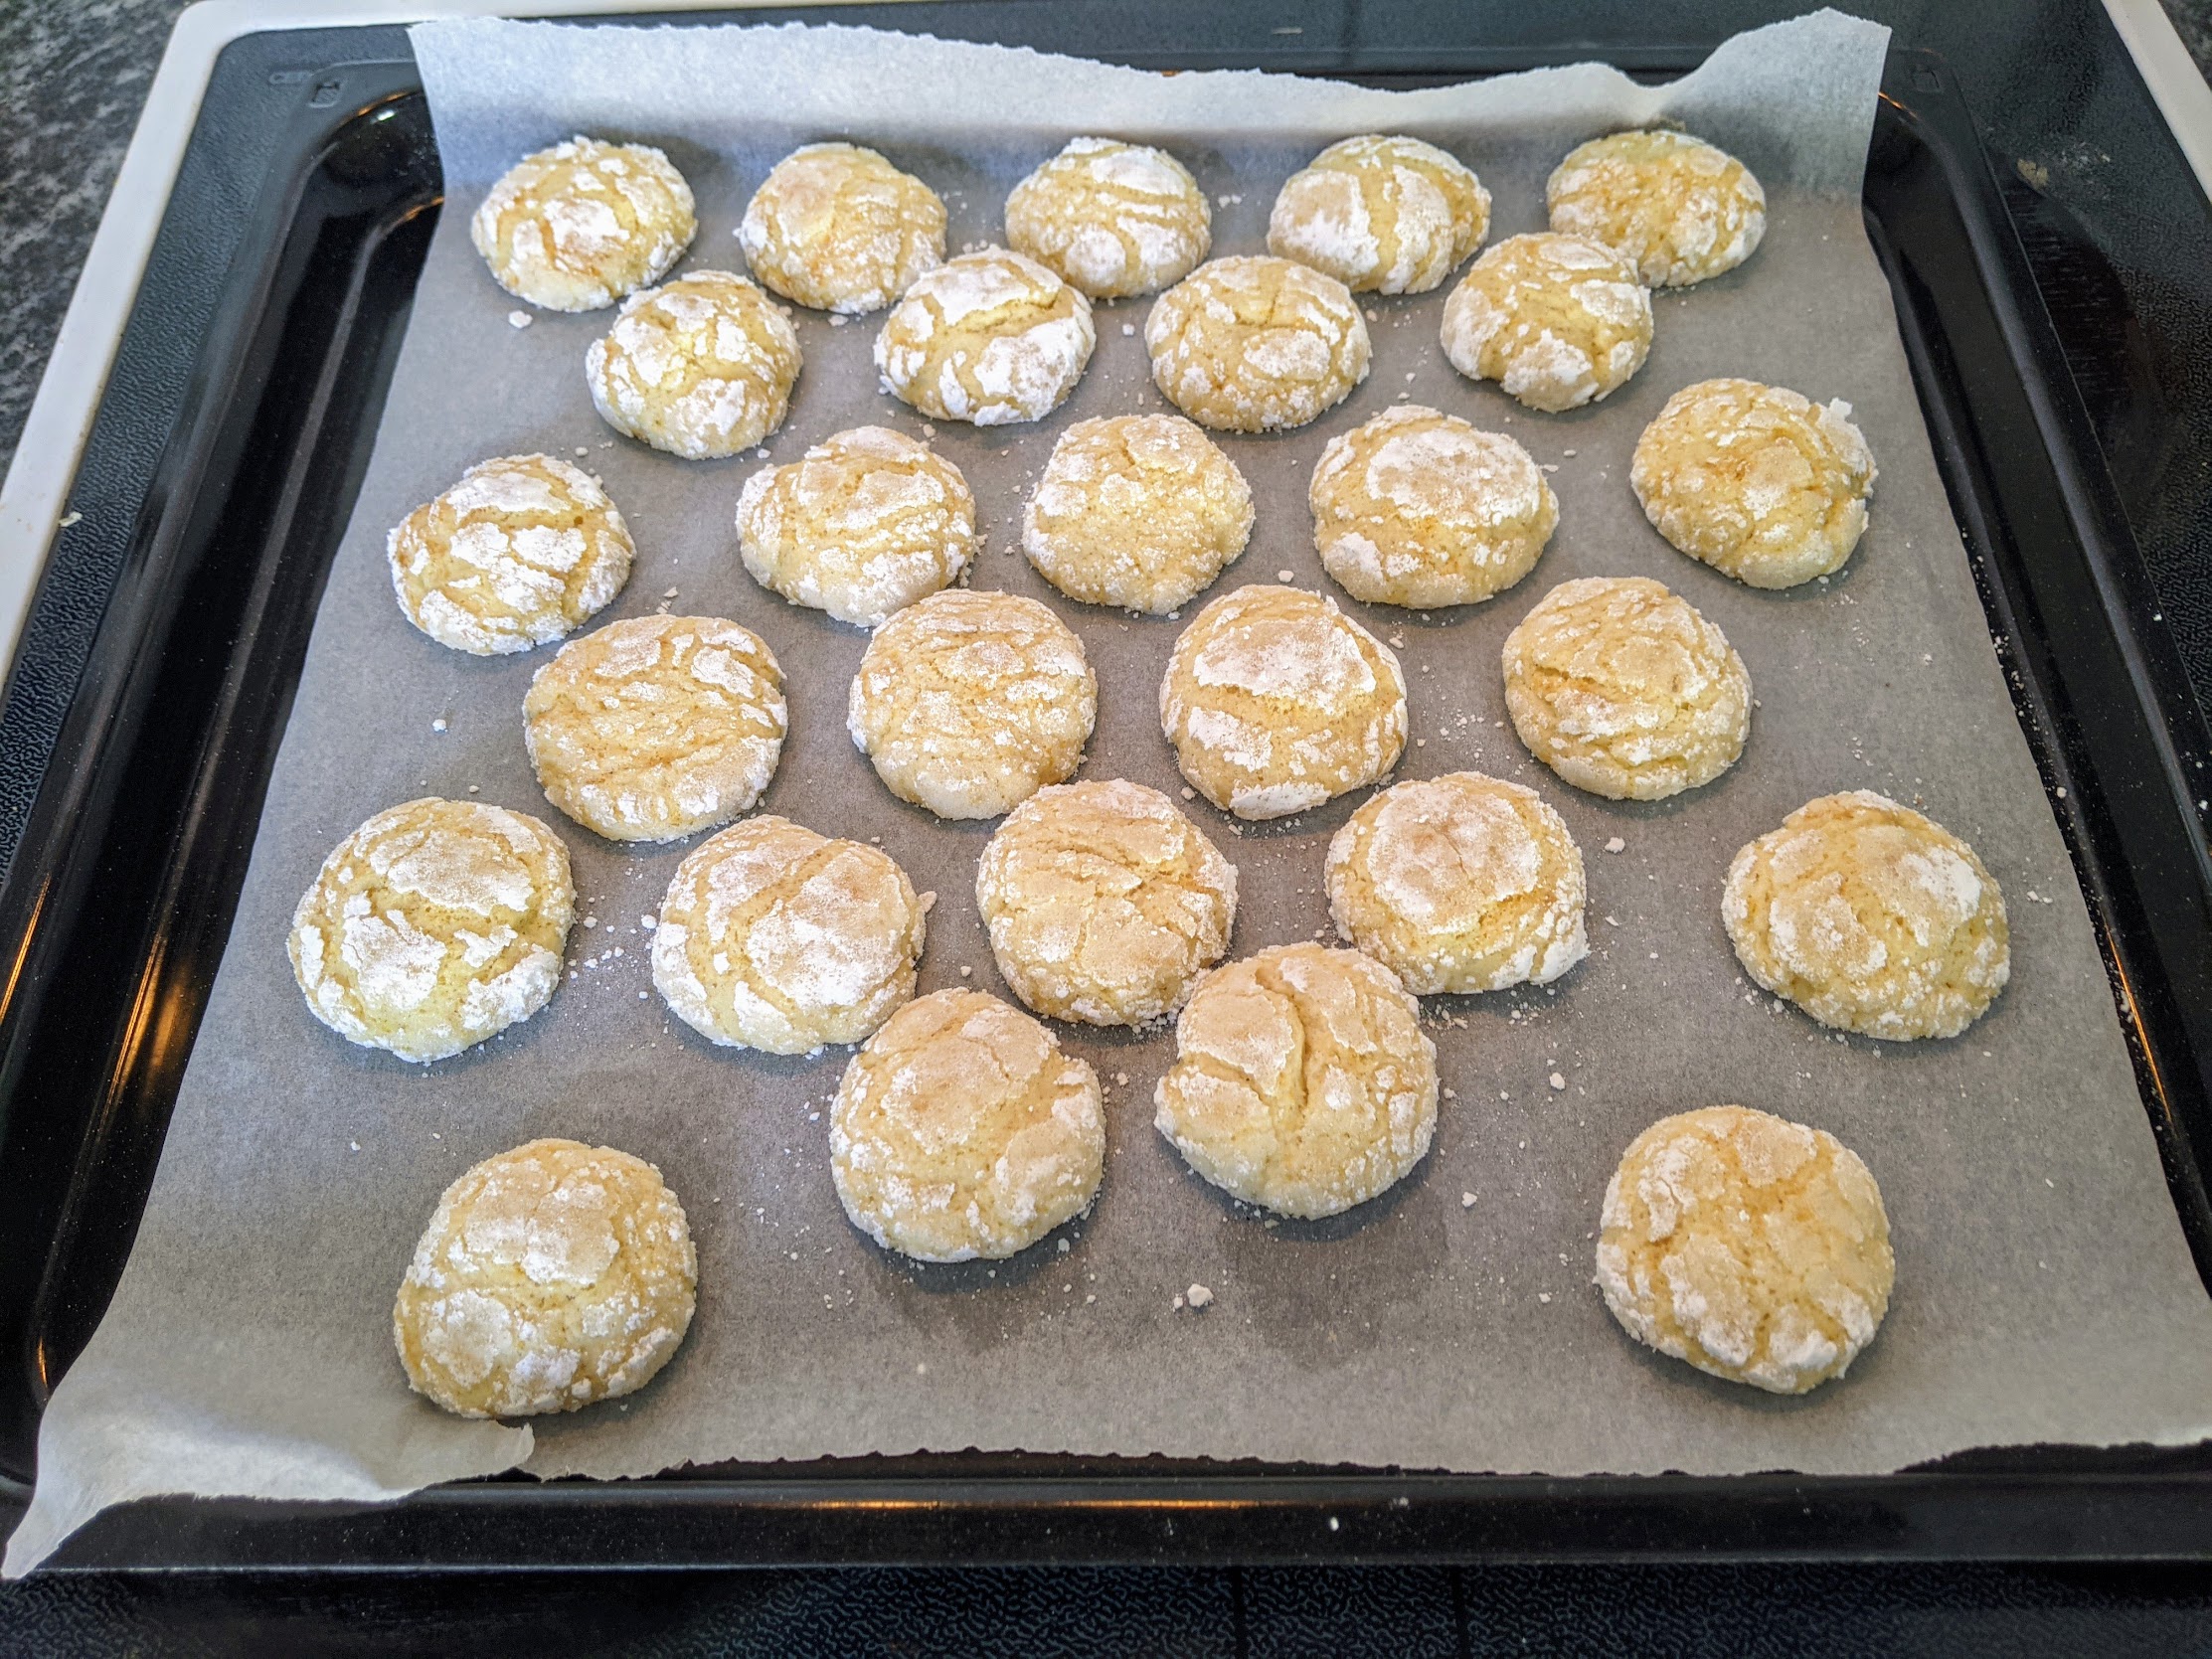 Biscuits craquelés au citron